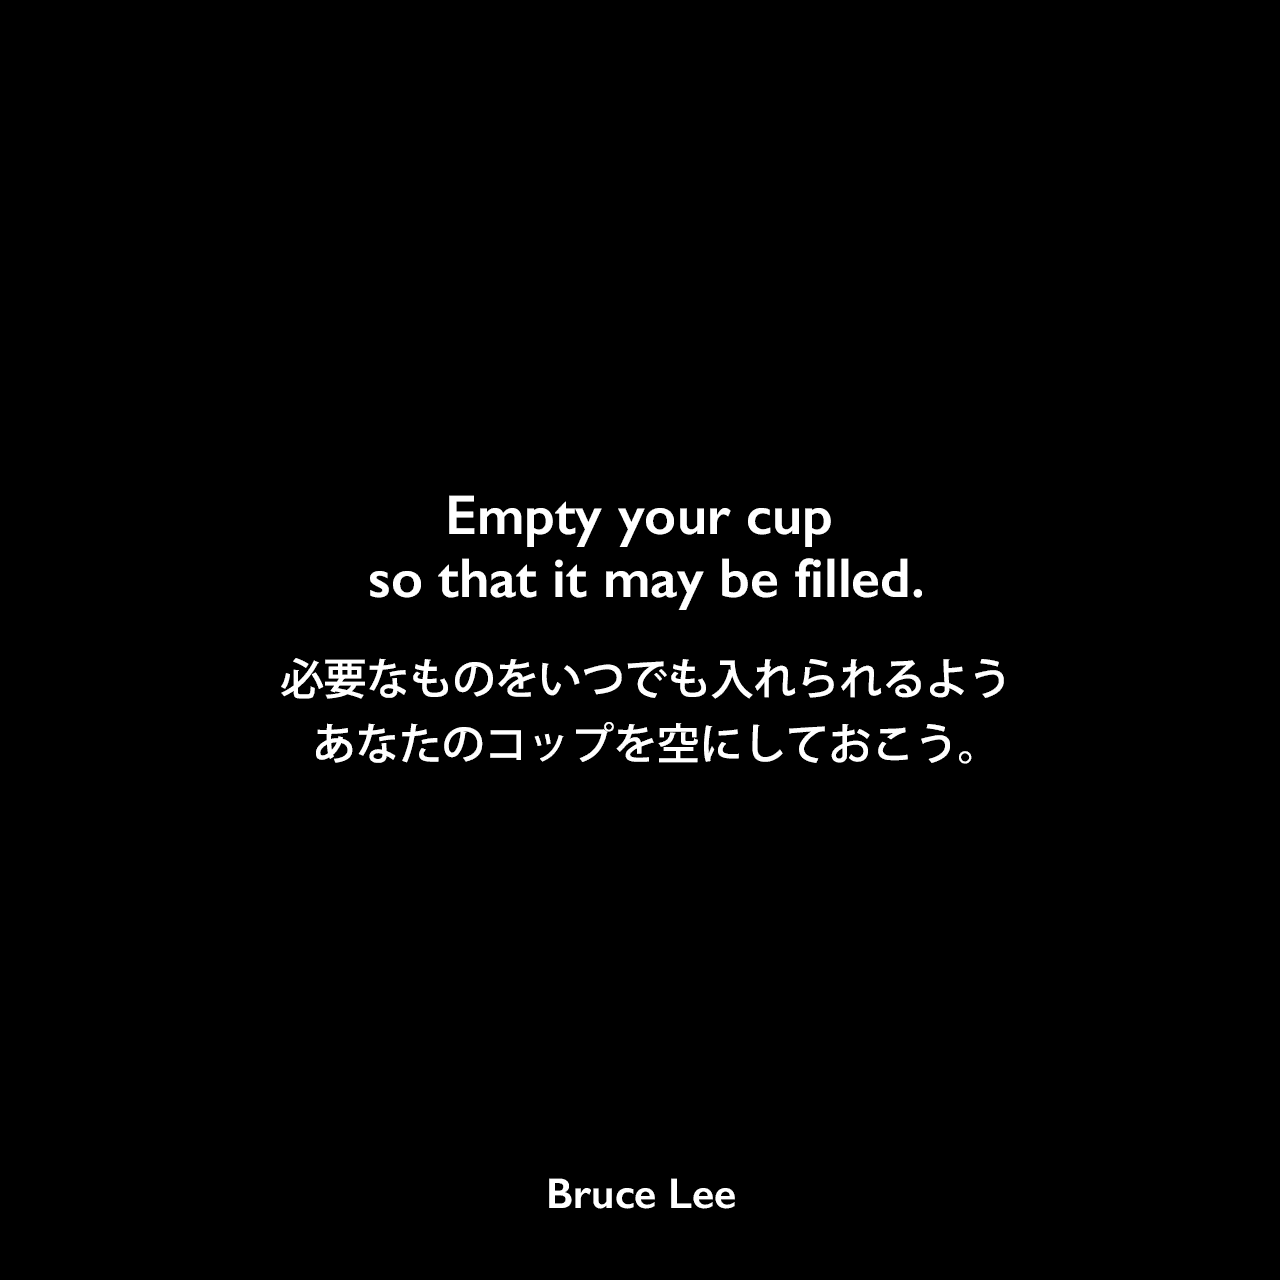 Empty your cup so that it may be filled.必要なものをいつでも入れられるよう、あなたのコップを空にしておこう。- ブルース・リーの本「ブルース・リーが語るストライキング・ソーツ」よりBruce Lee